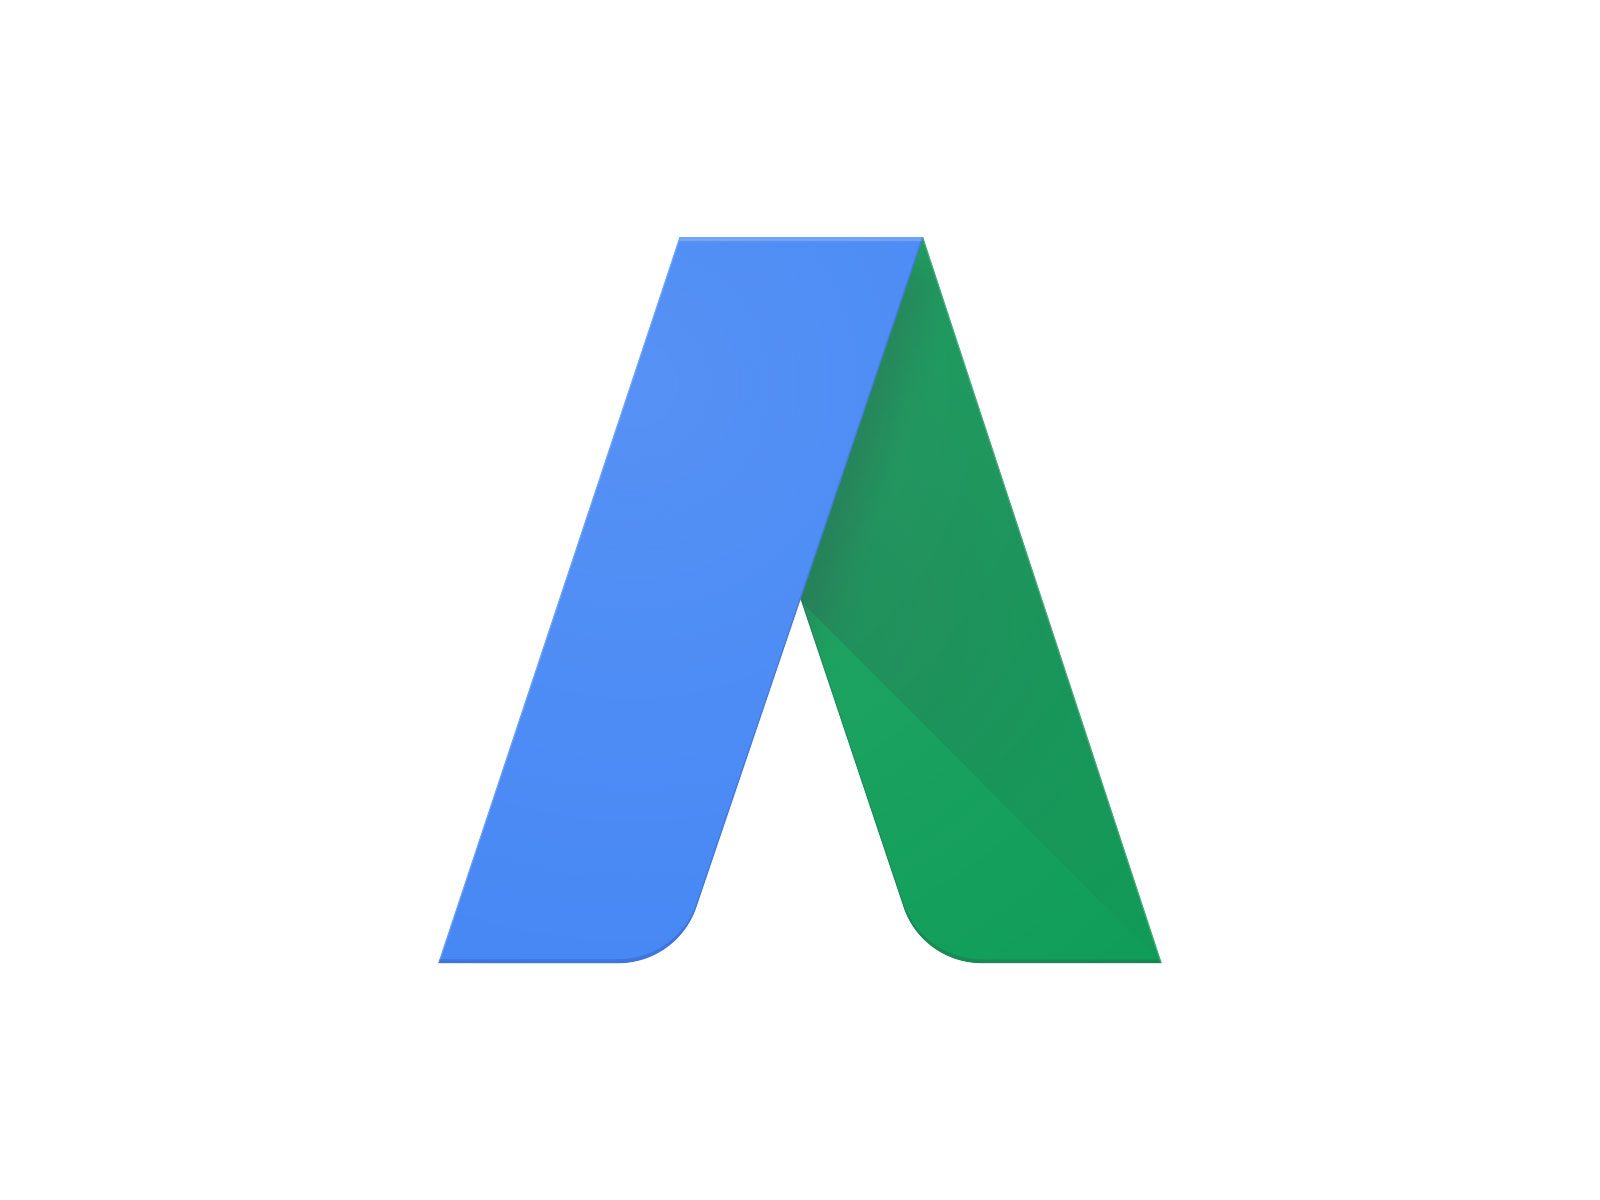 Google AdWordsのロゴ